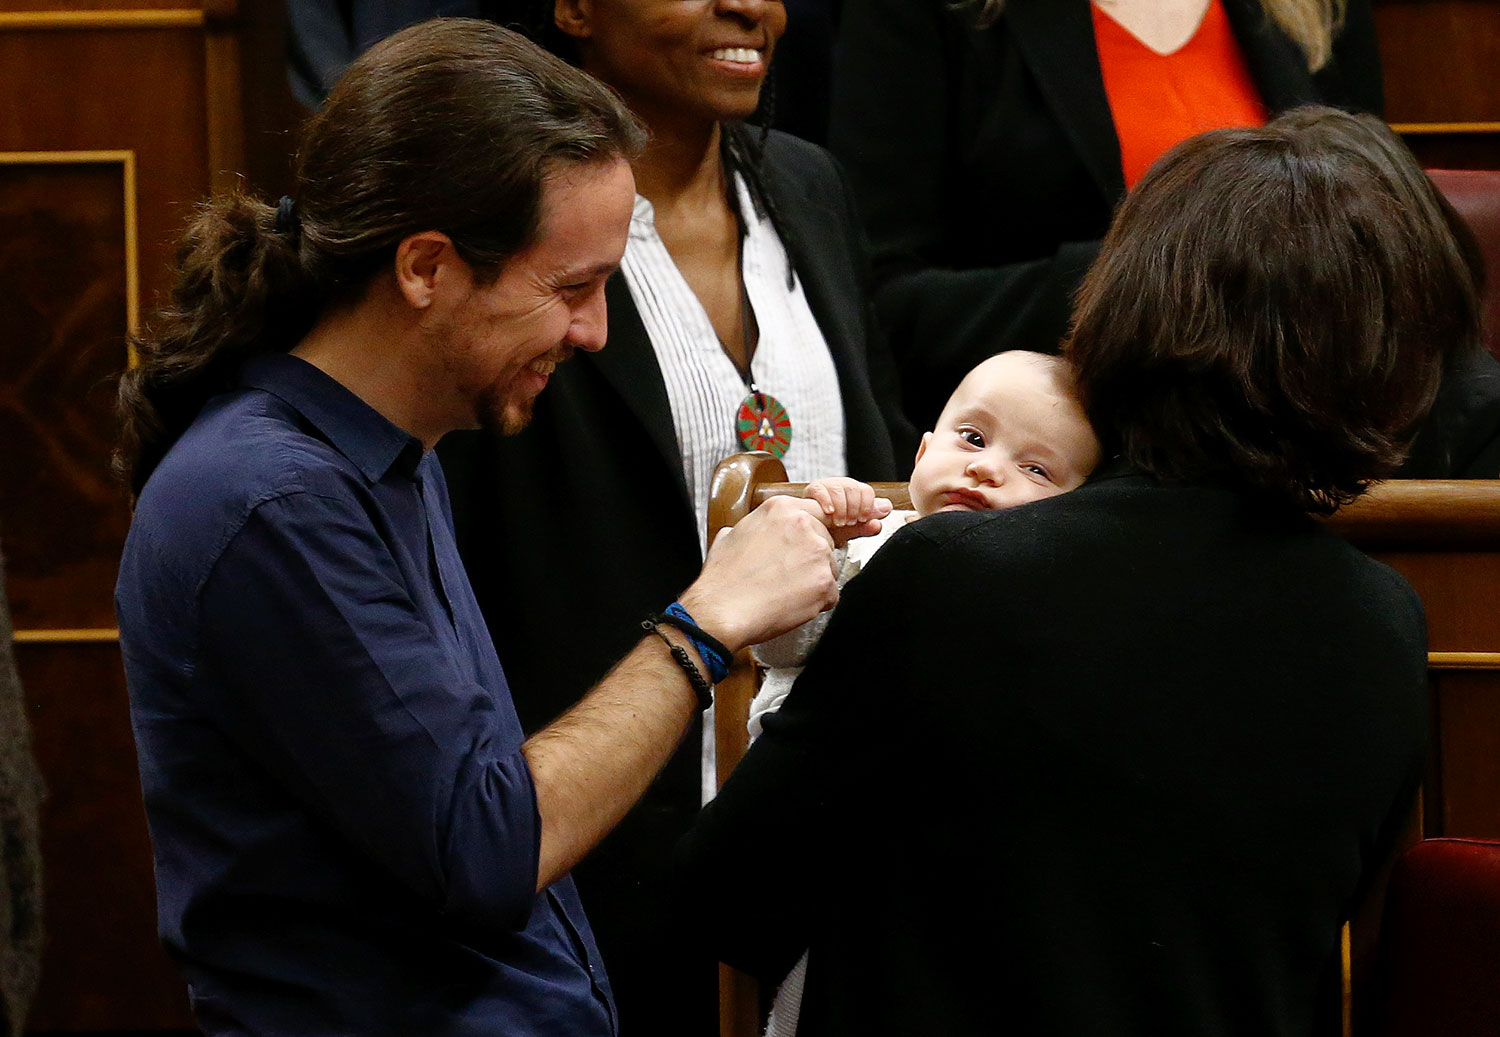 Continúa la polémica en España por la presencia de un bebé en el Parlamento